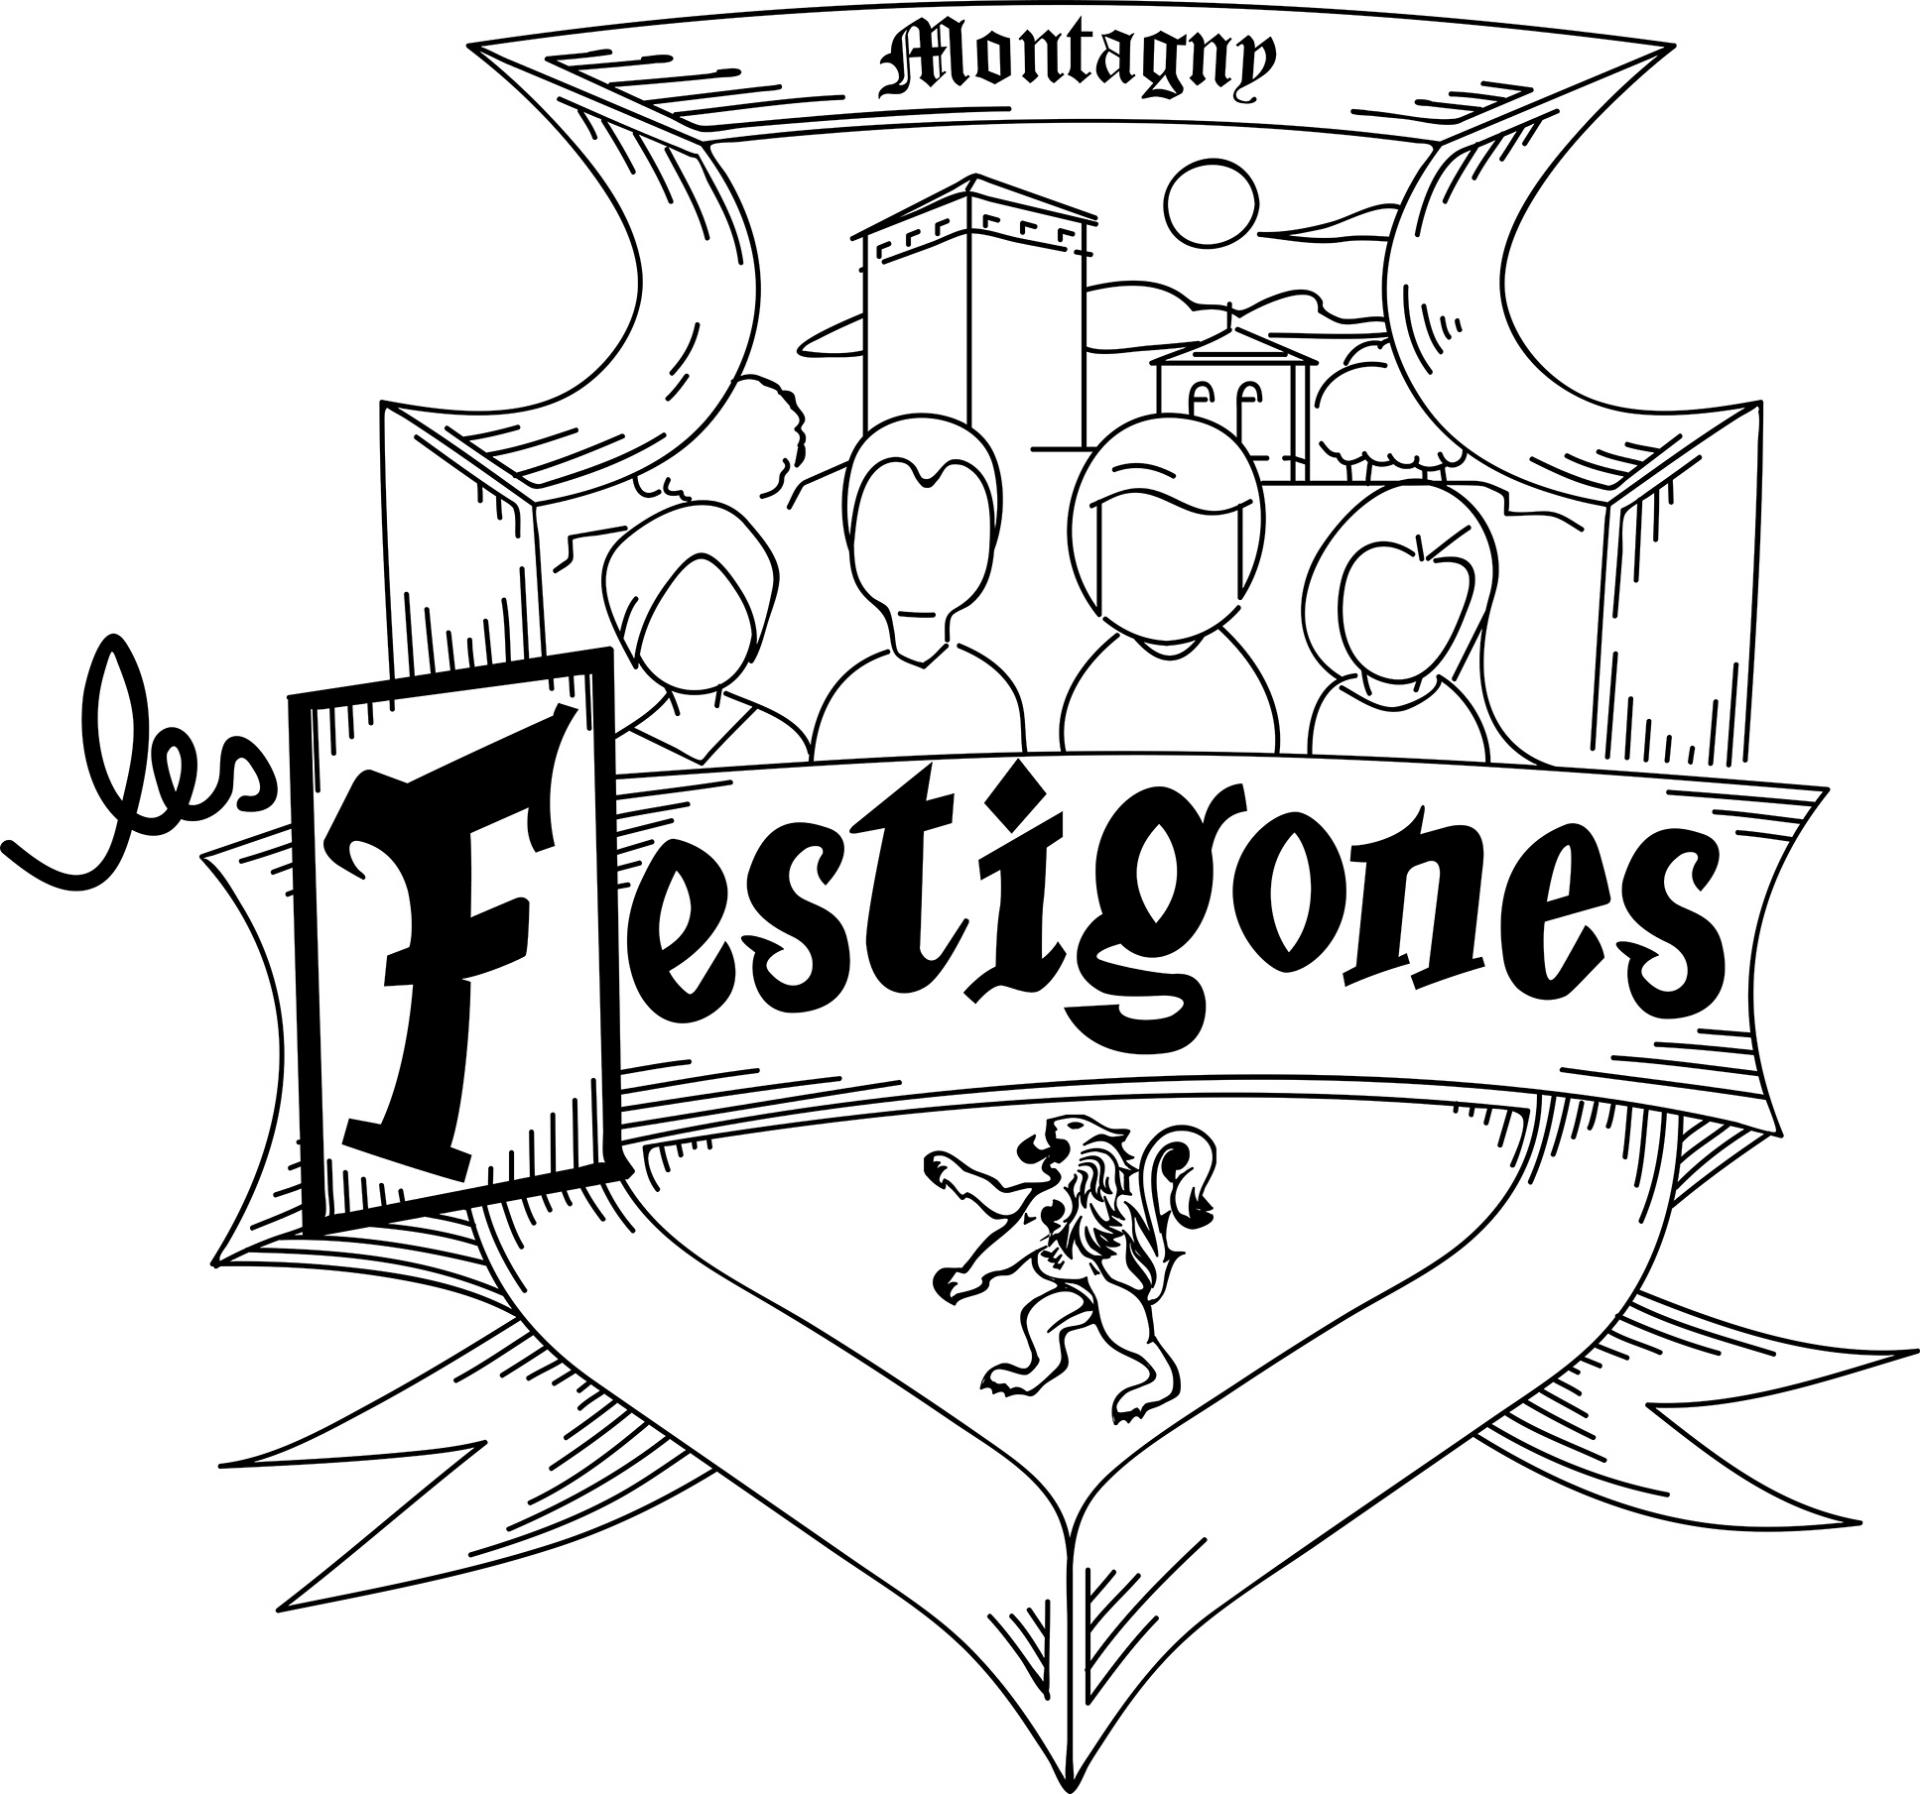 Festigones